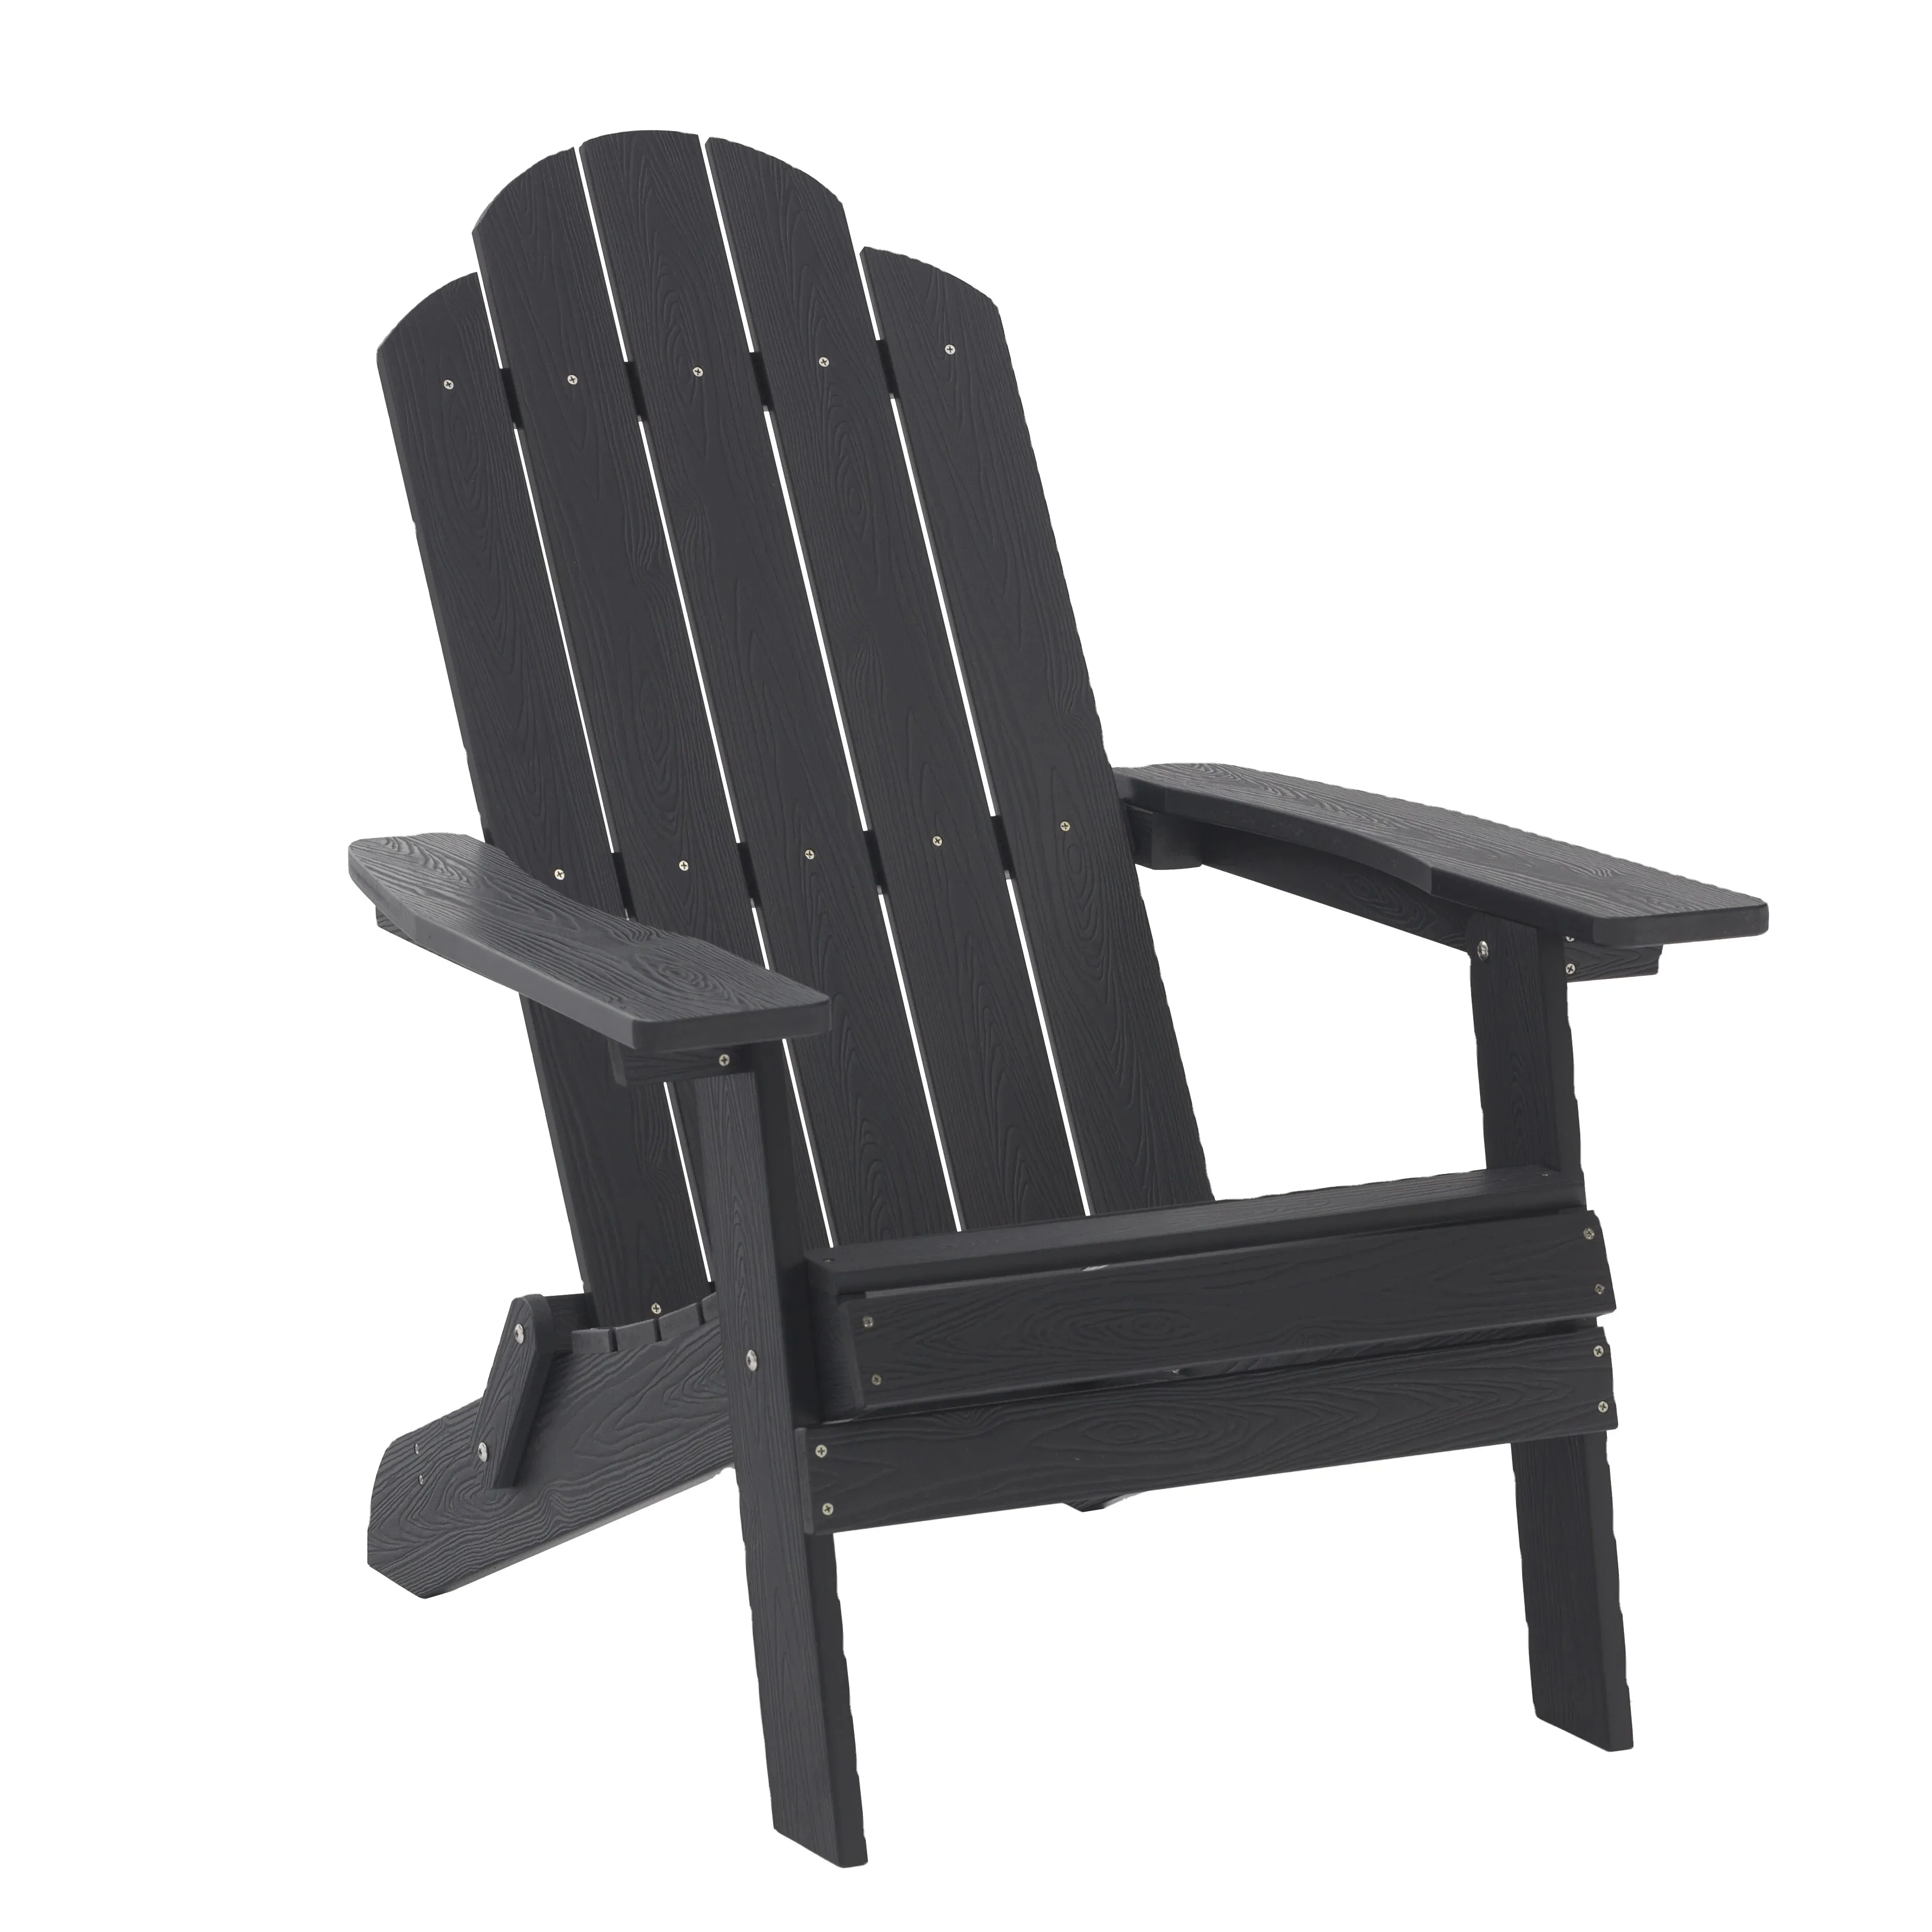 Пластиковое деревянное кресло adirondack, уличная мебель, деревянные кресла-качалки, стул adirondack